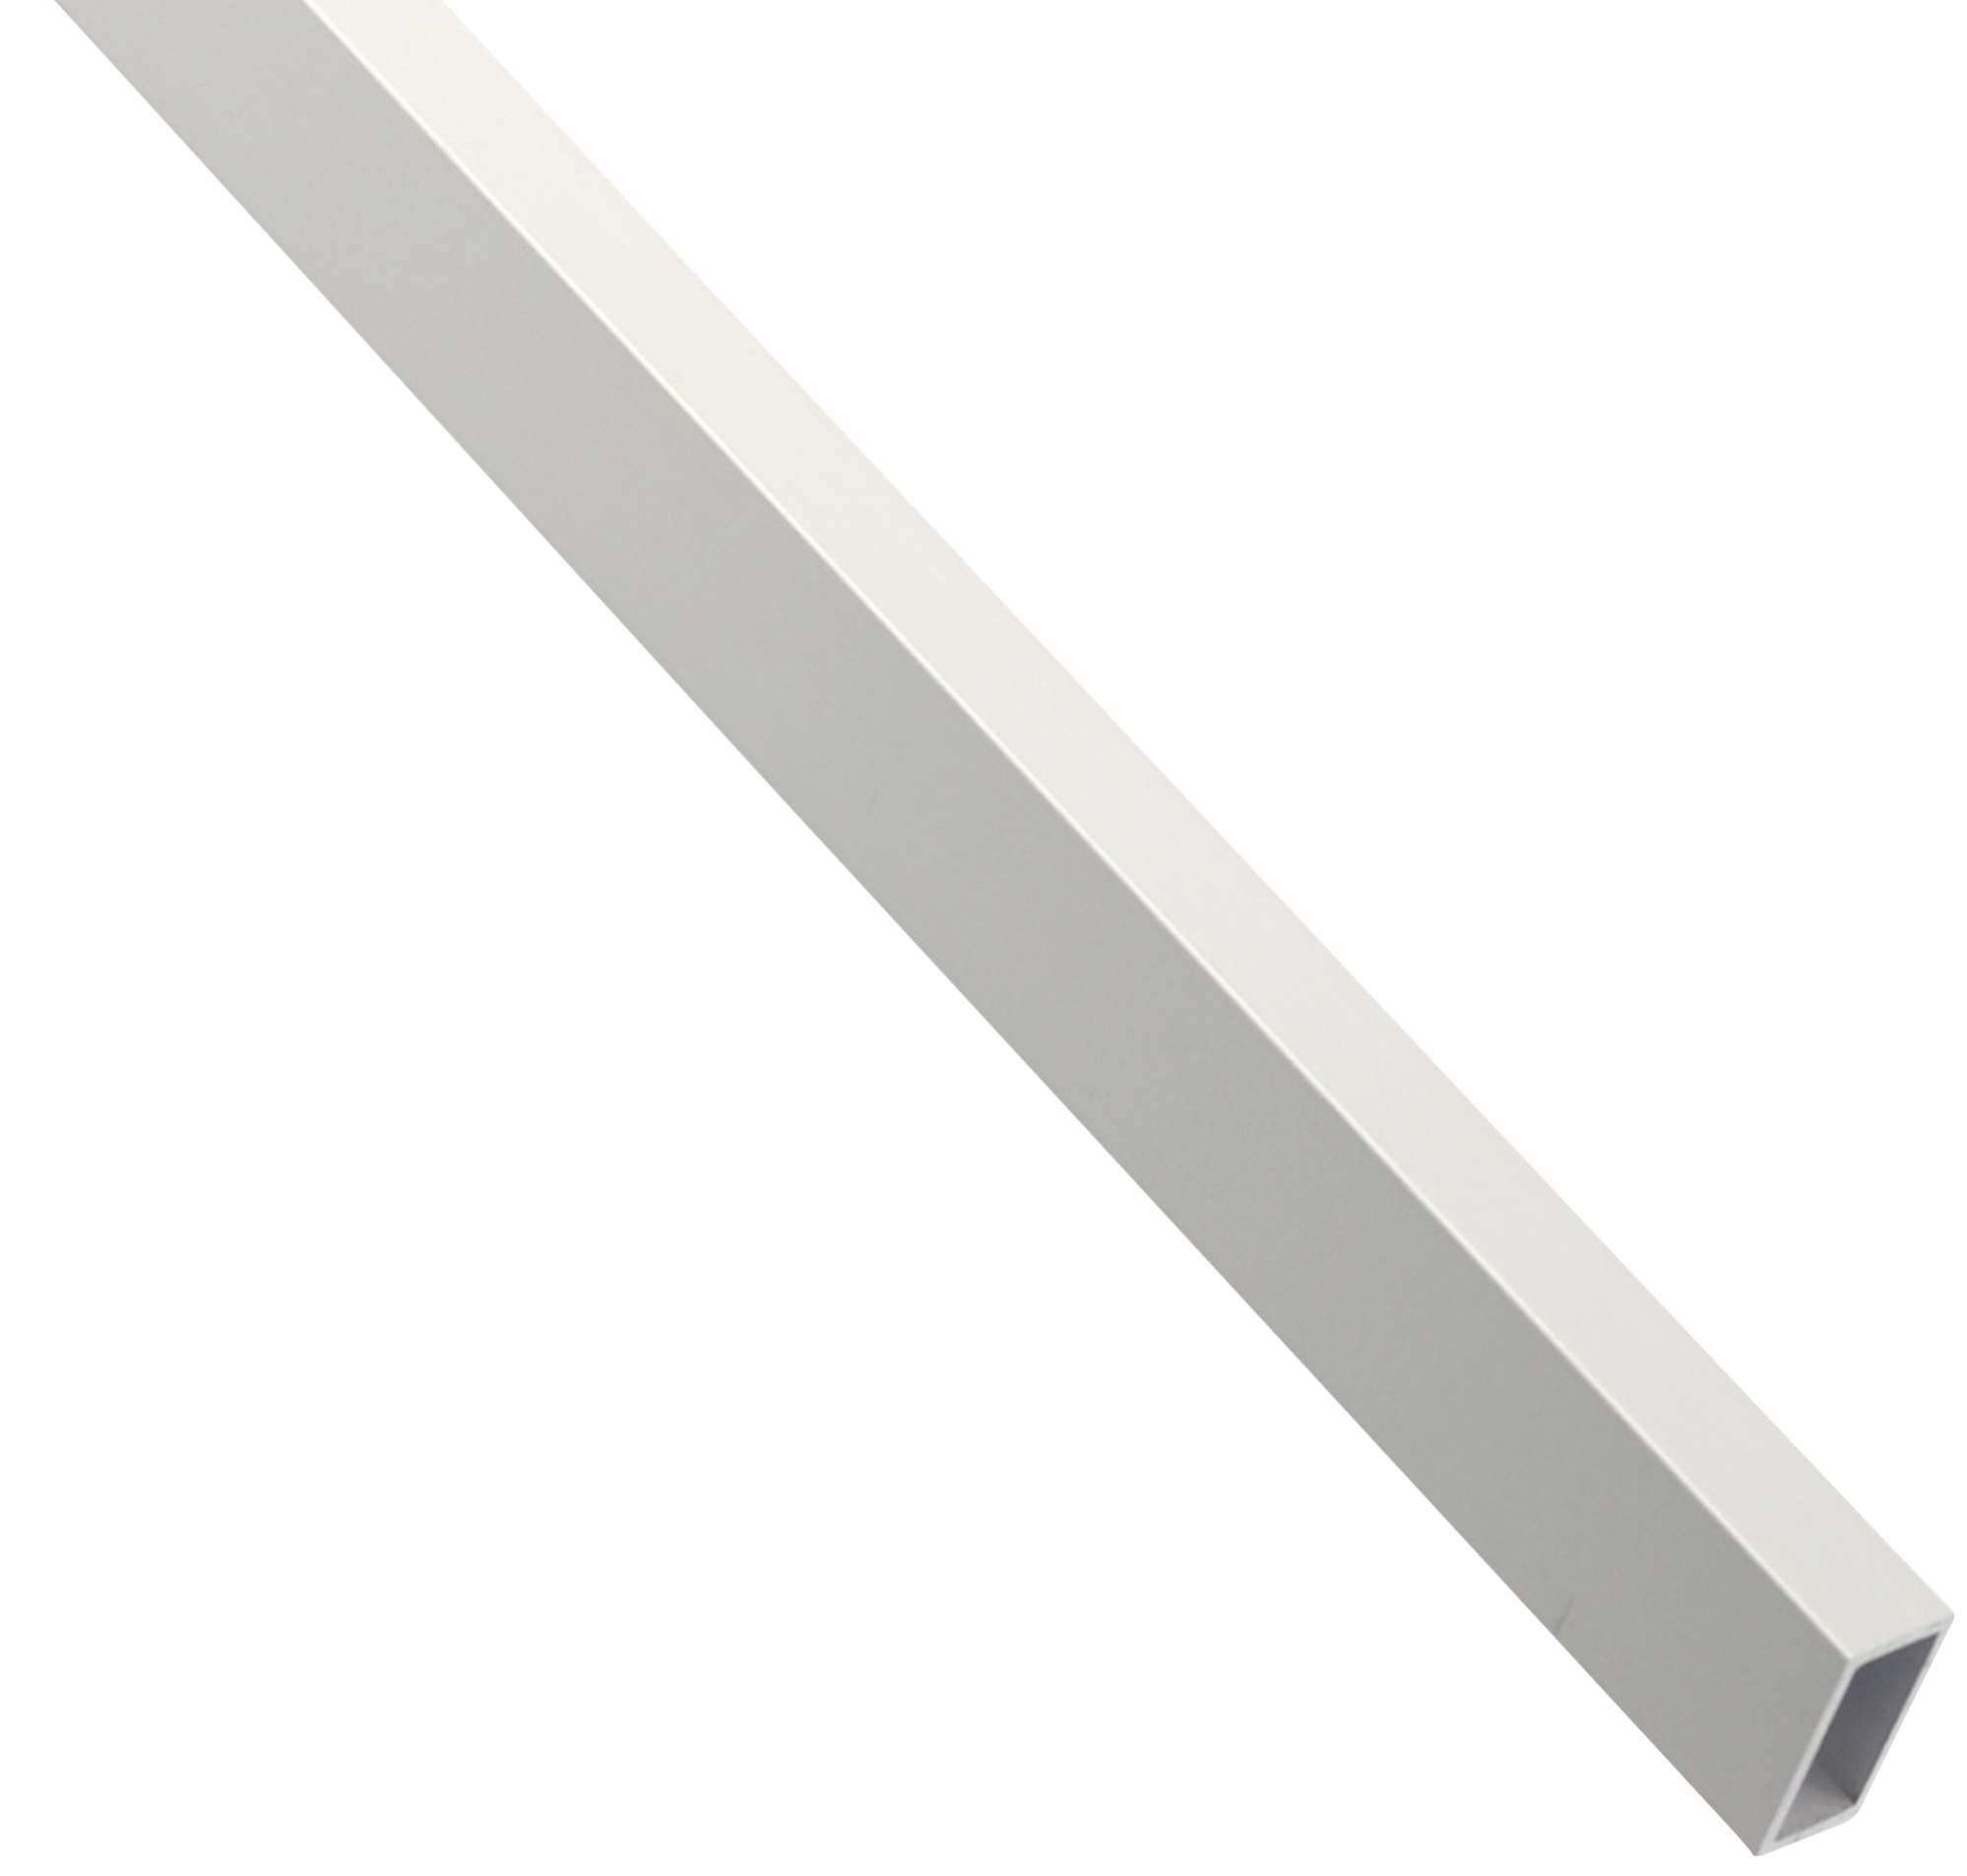 Perfil de aluminio tubo cuadrado en color blanco.